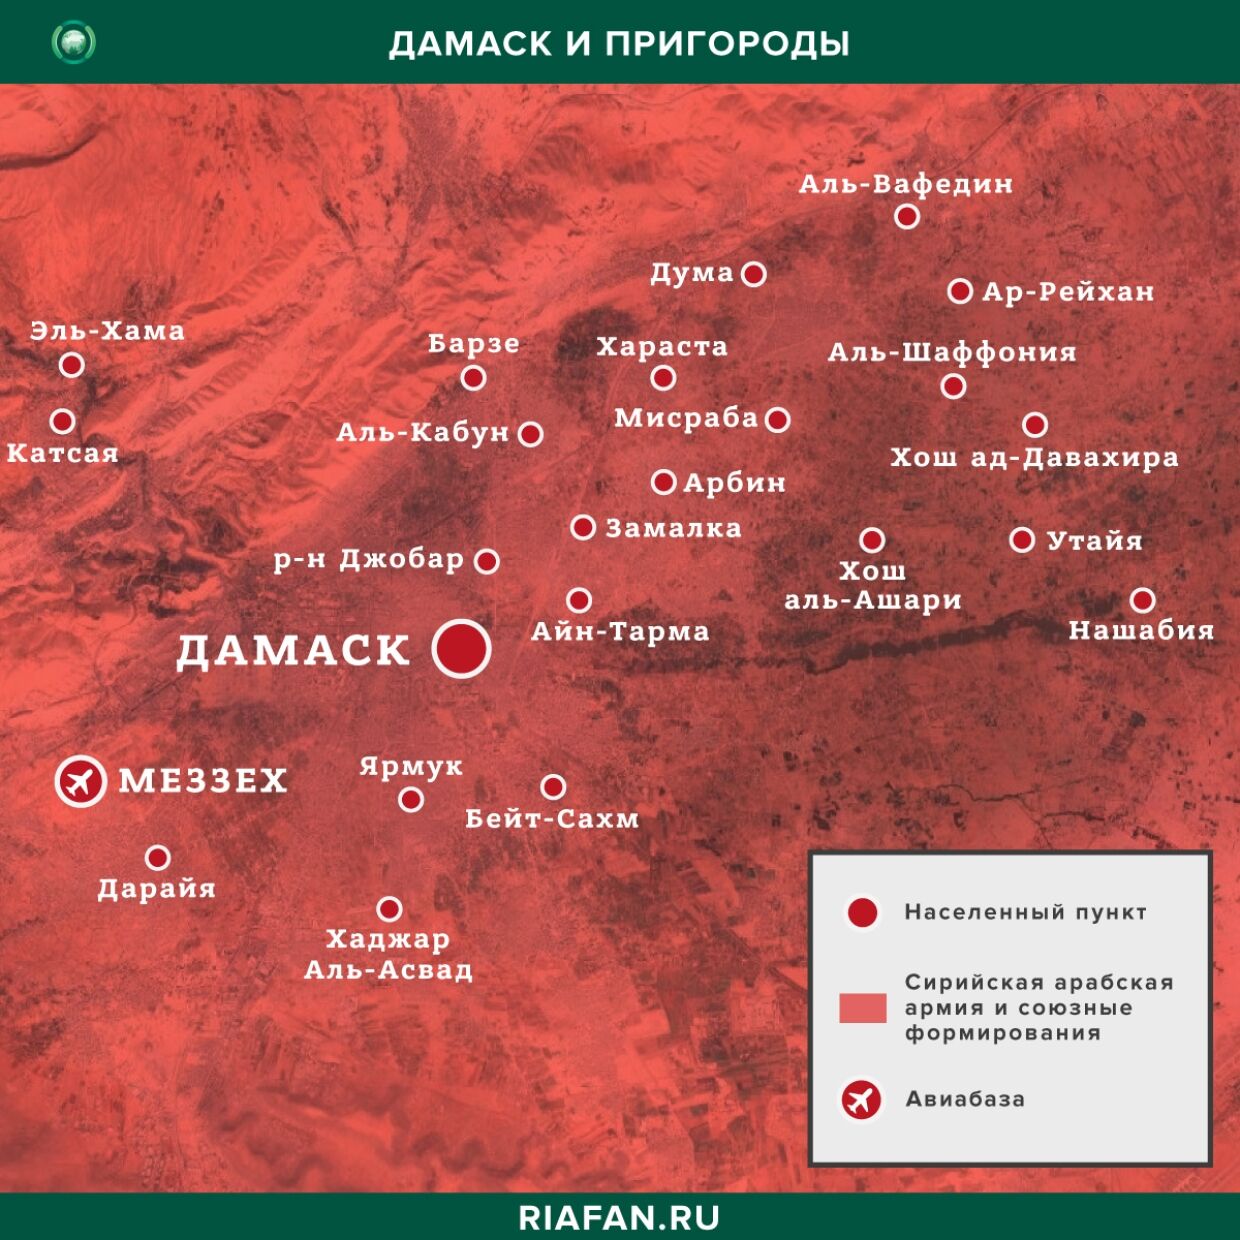 Resultados diarios de Siria para 5 Julio 06.00: междоусобица в рядах боевиков СНА в Хасаке и Ракке, в Дейр-эз-Зоре убиты 26 боевиков ИГ